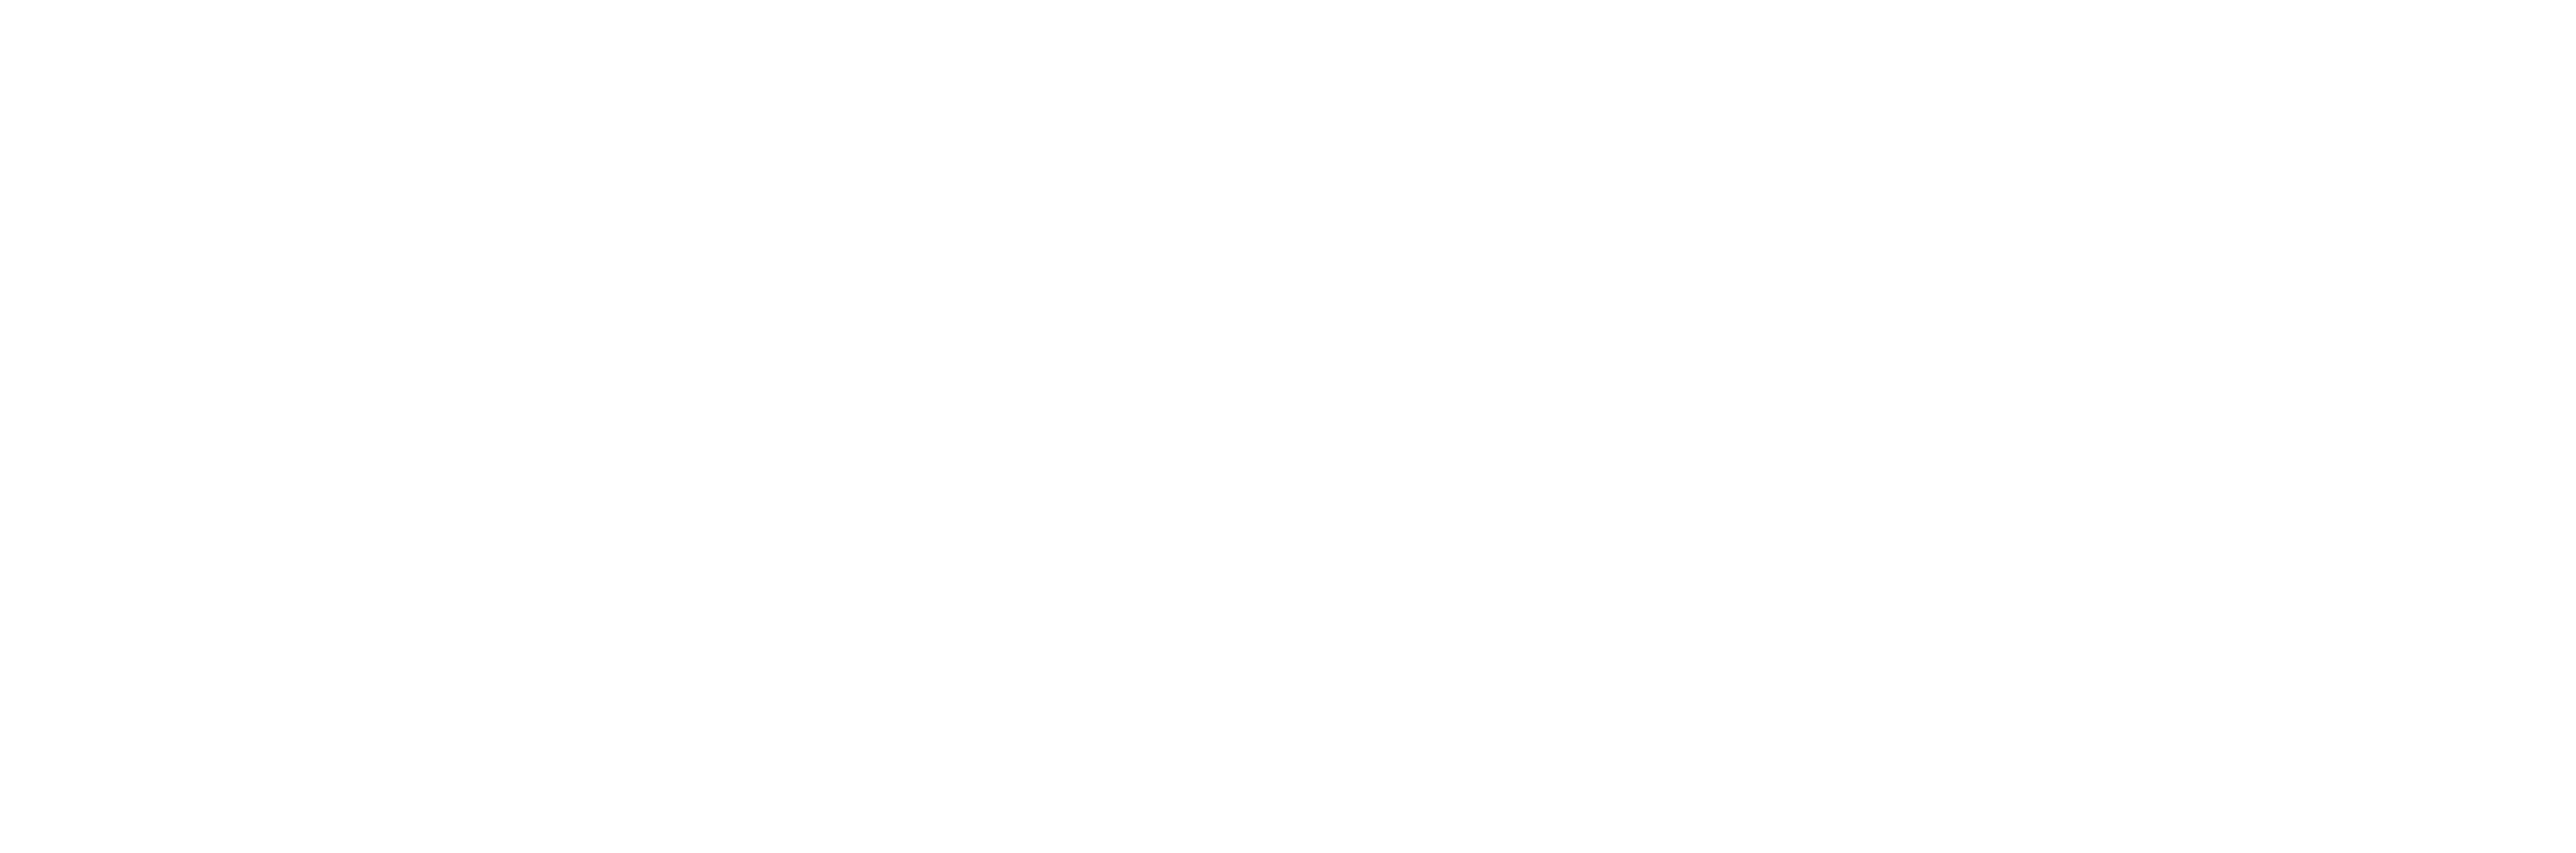 The Madelon